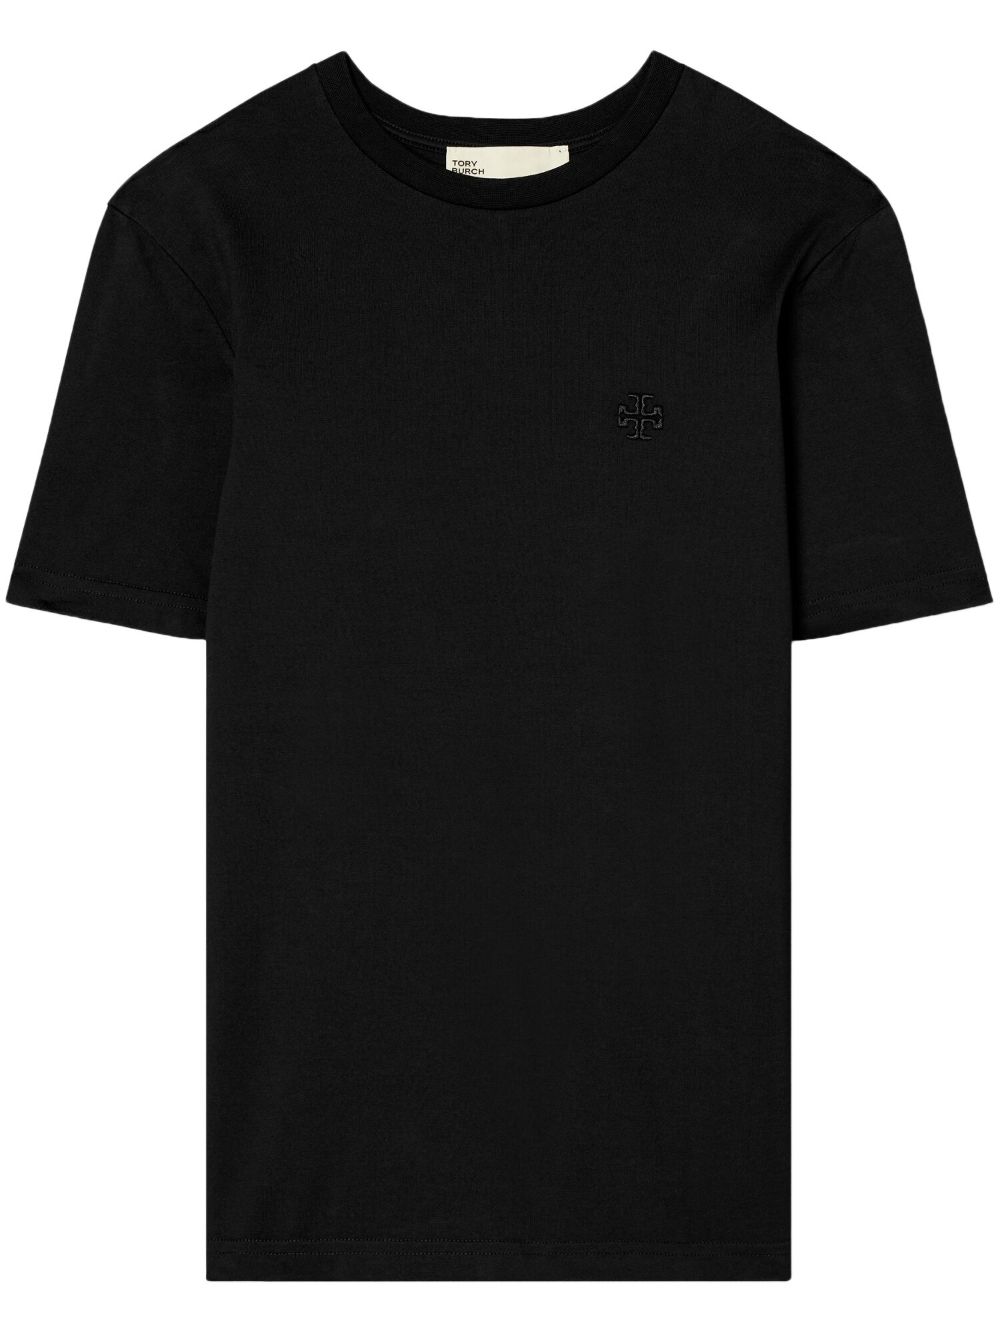 Tory Burch embroidered-logo round-neck T-shirt - Black von Tory Burch